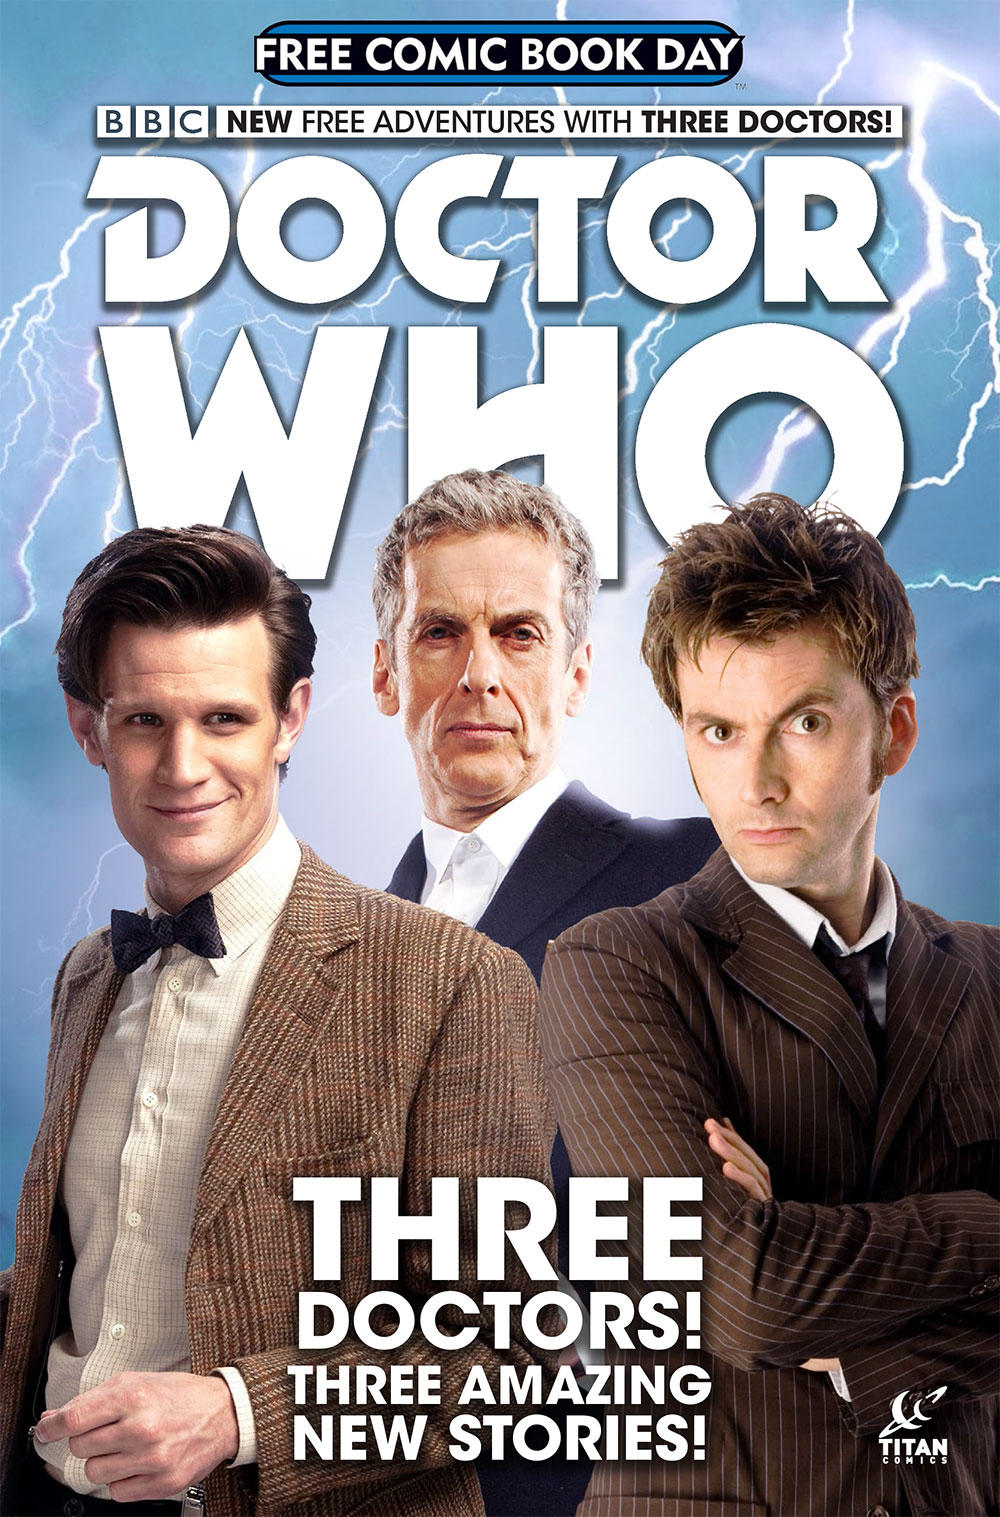 Doctor Who Special—FCBD 2015 Edition